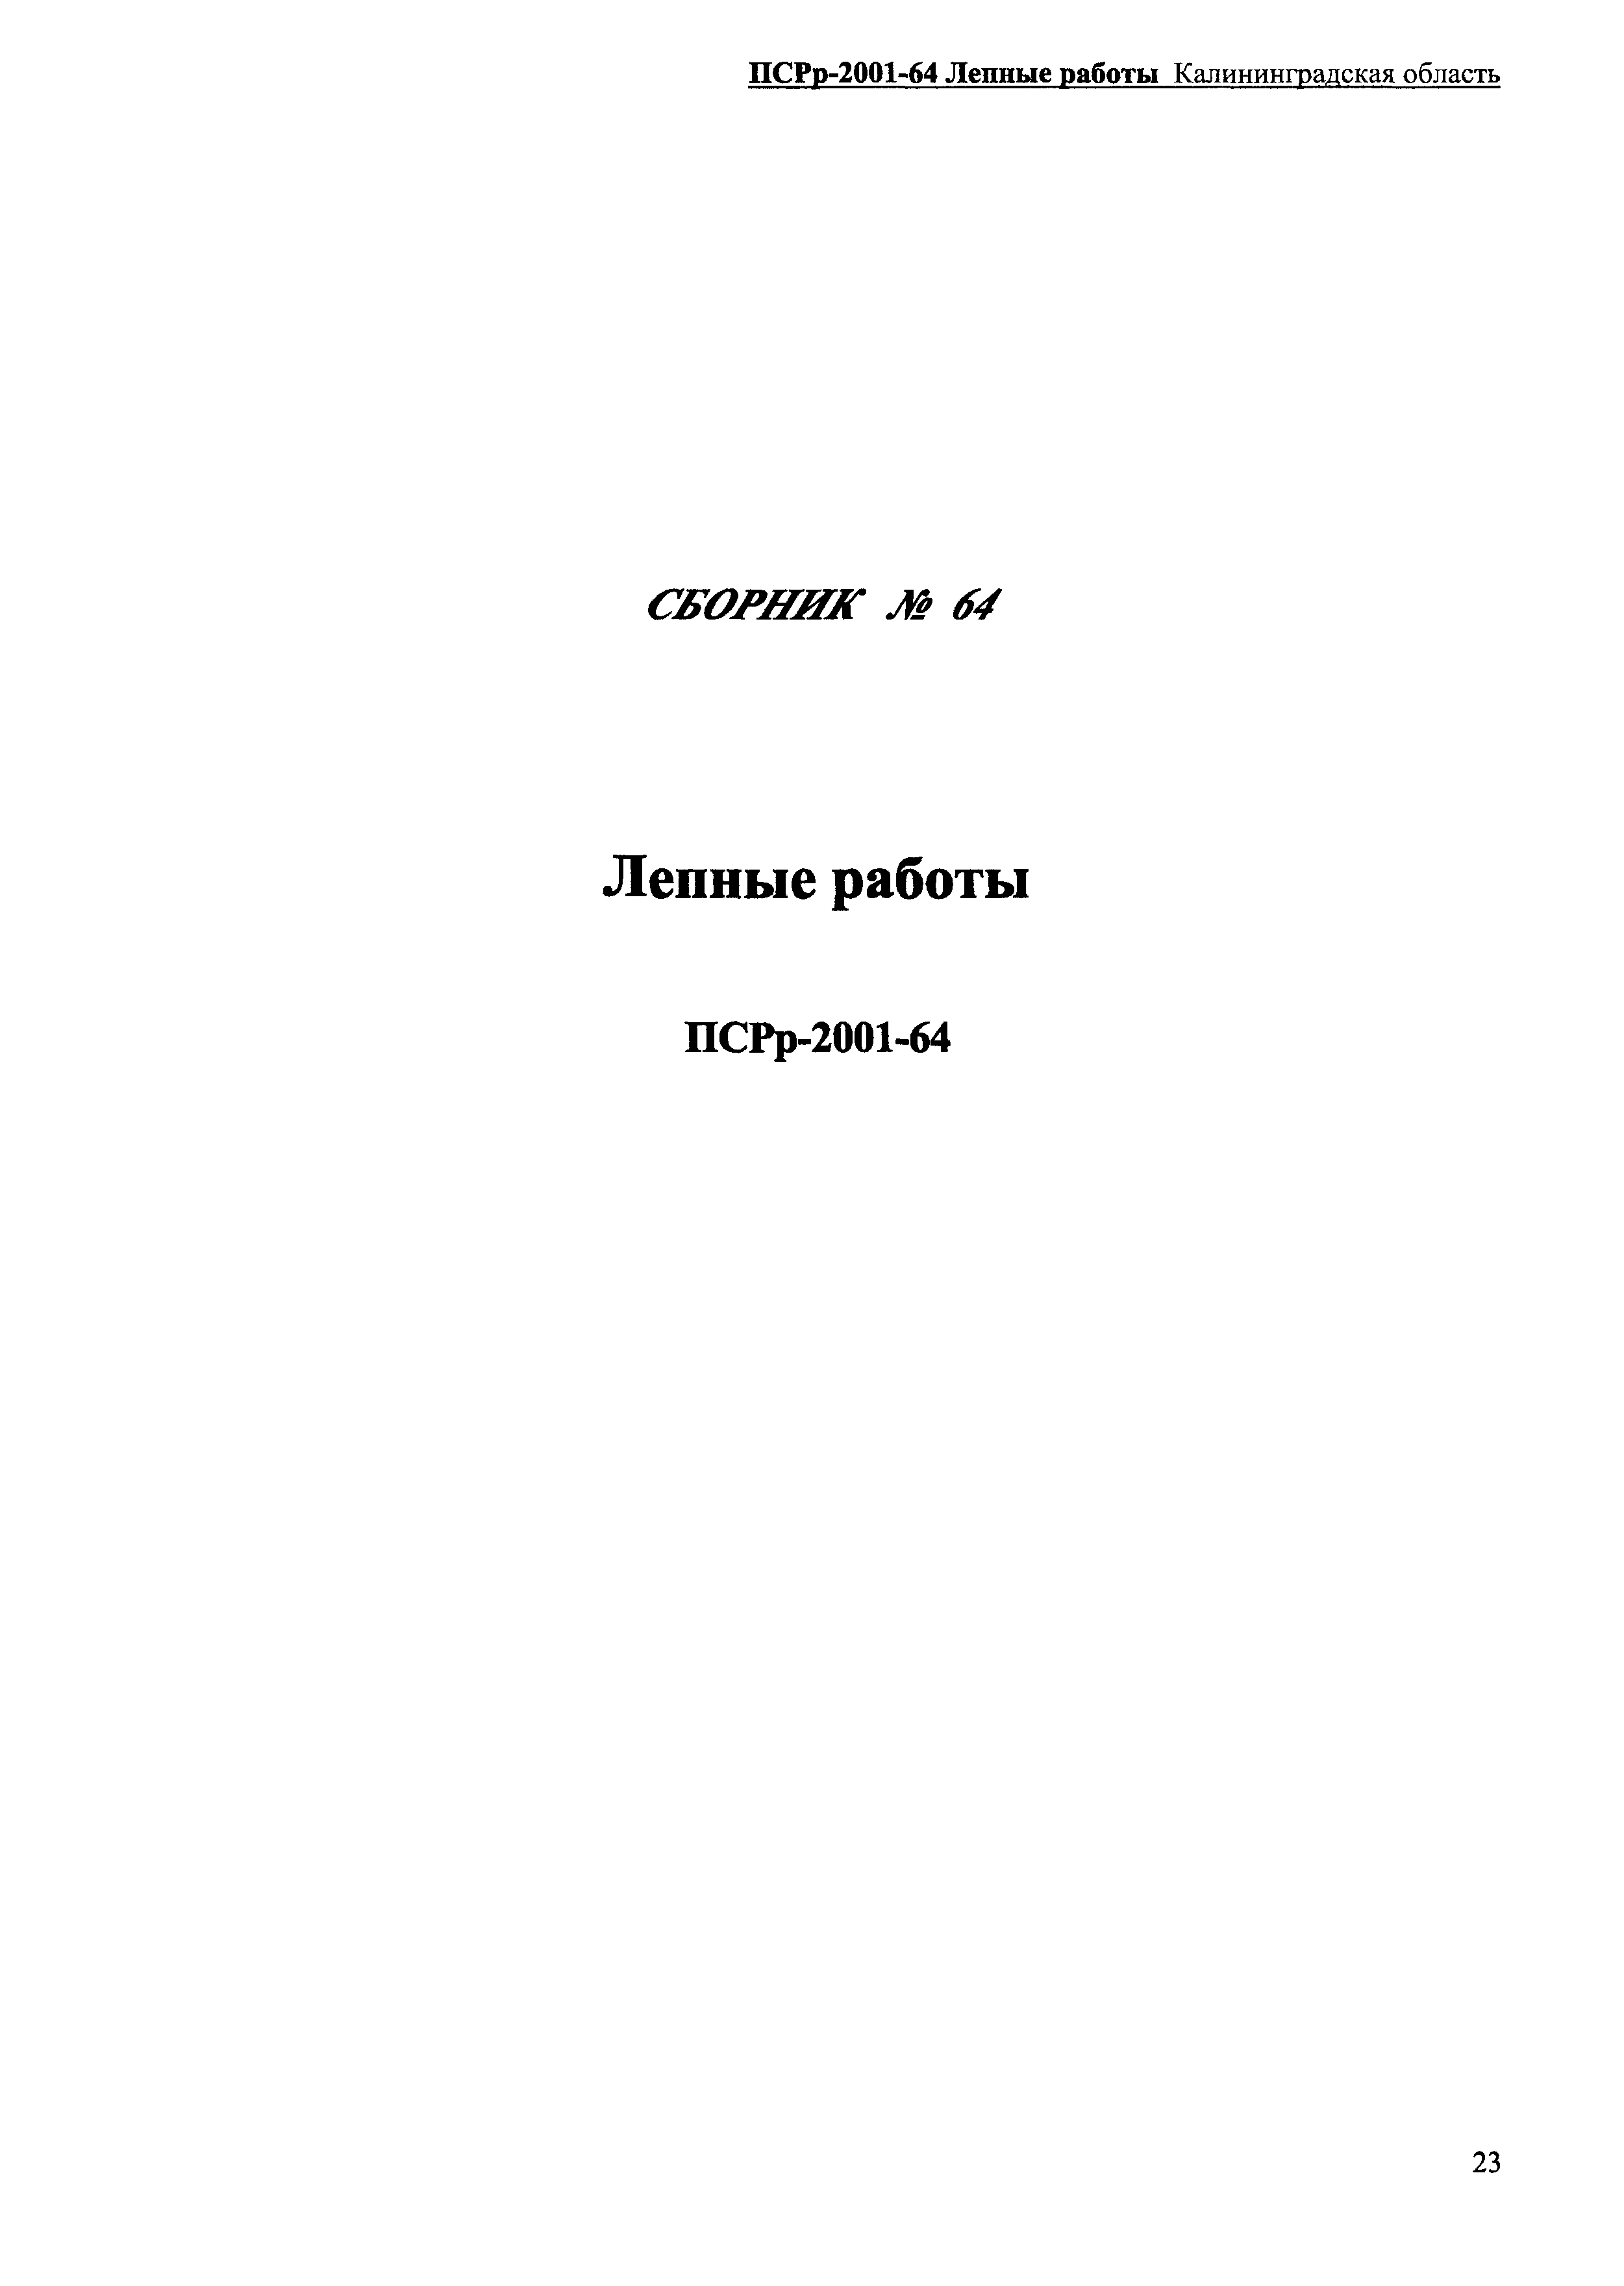 ПСРр Калининградской области ПСРр-2001